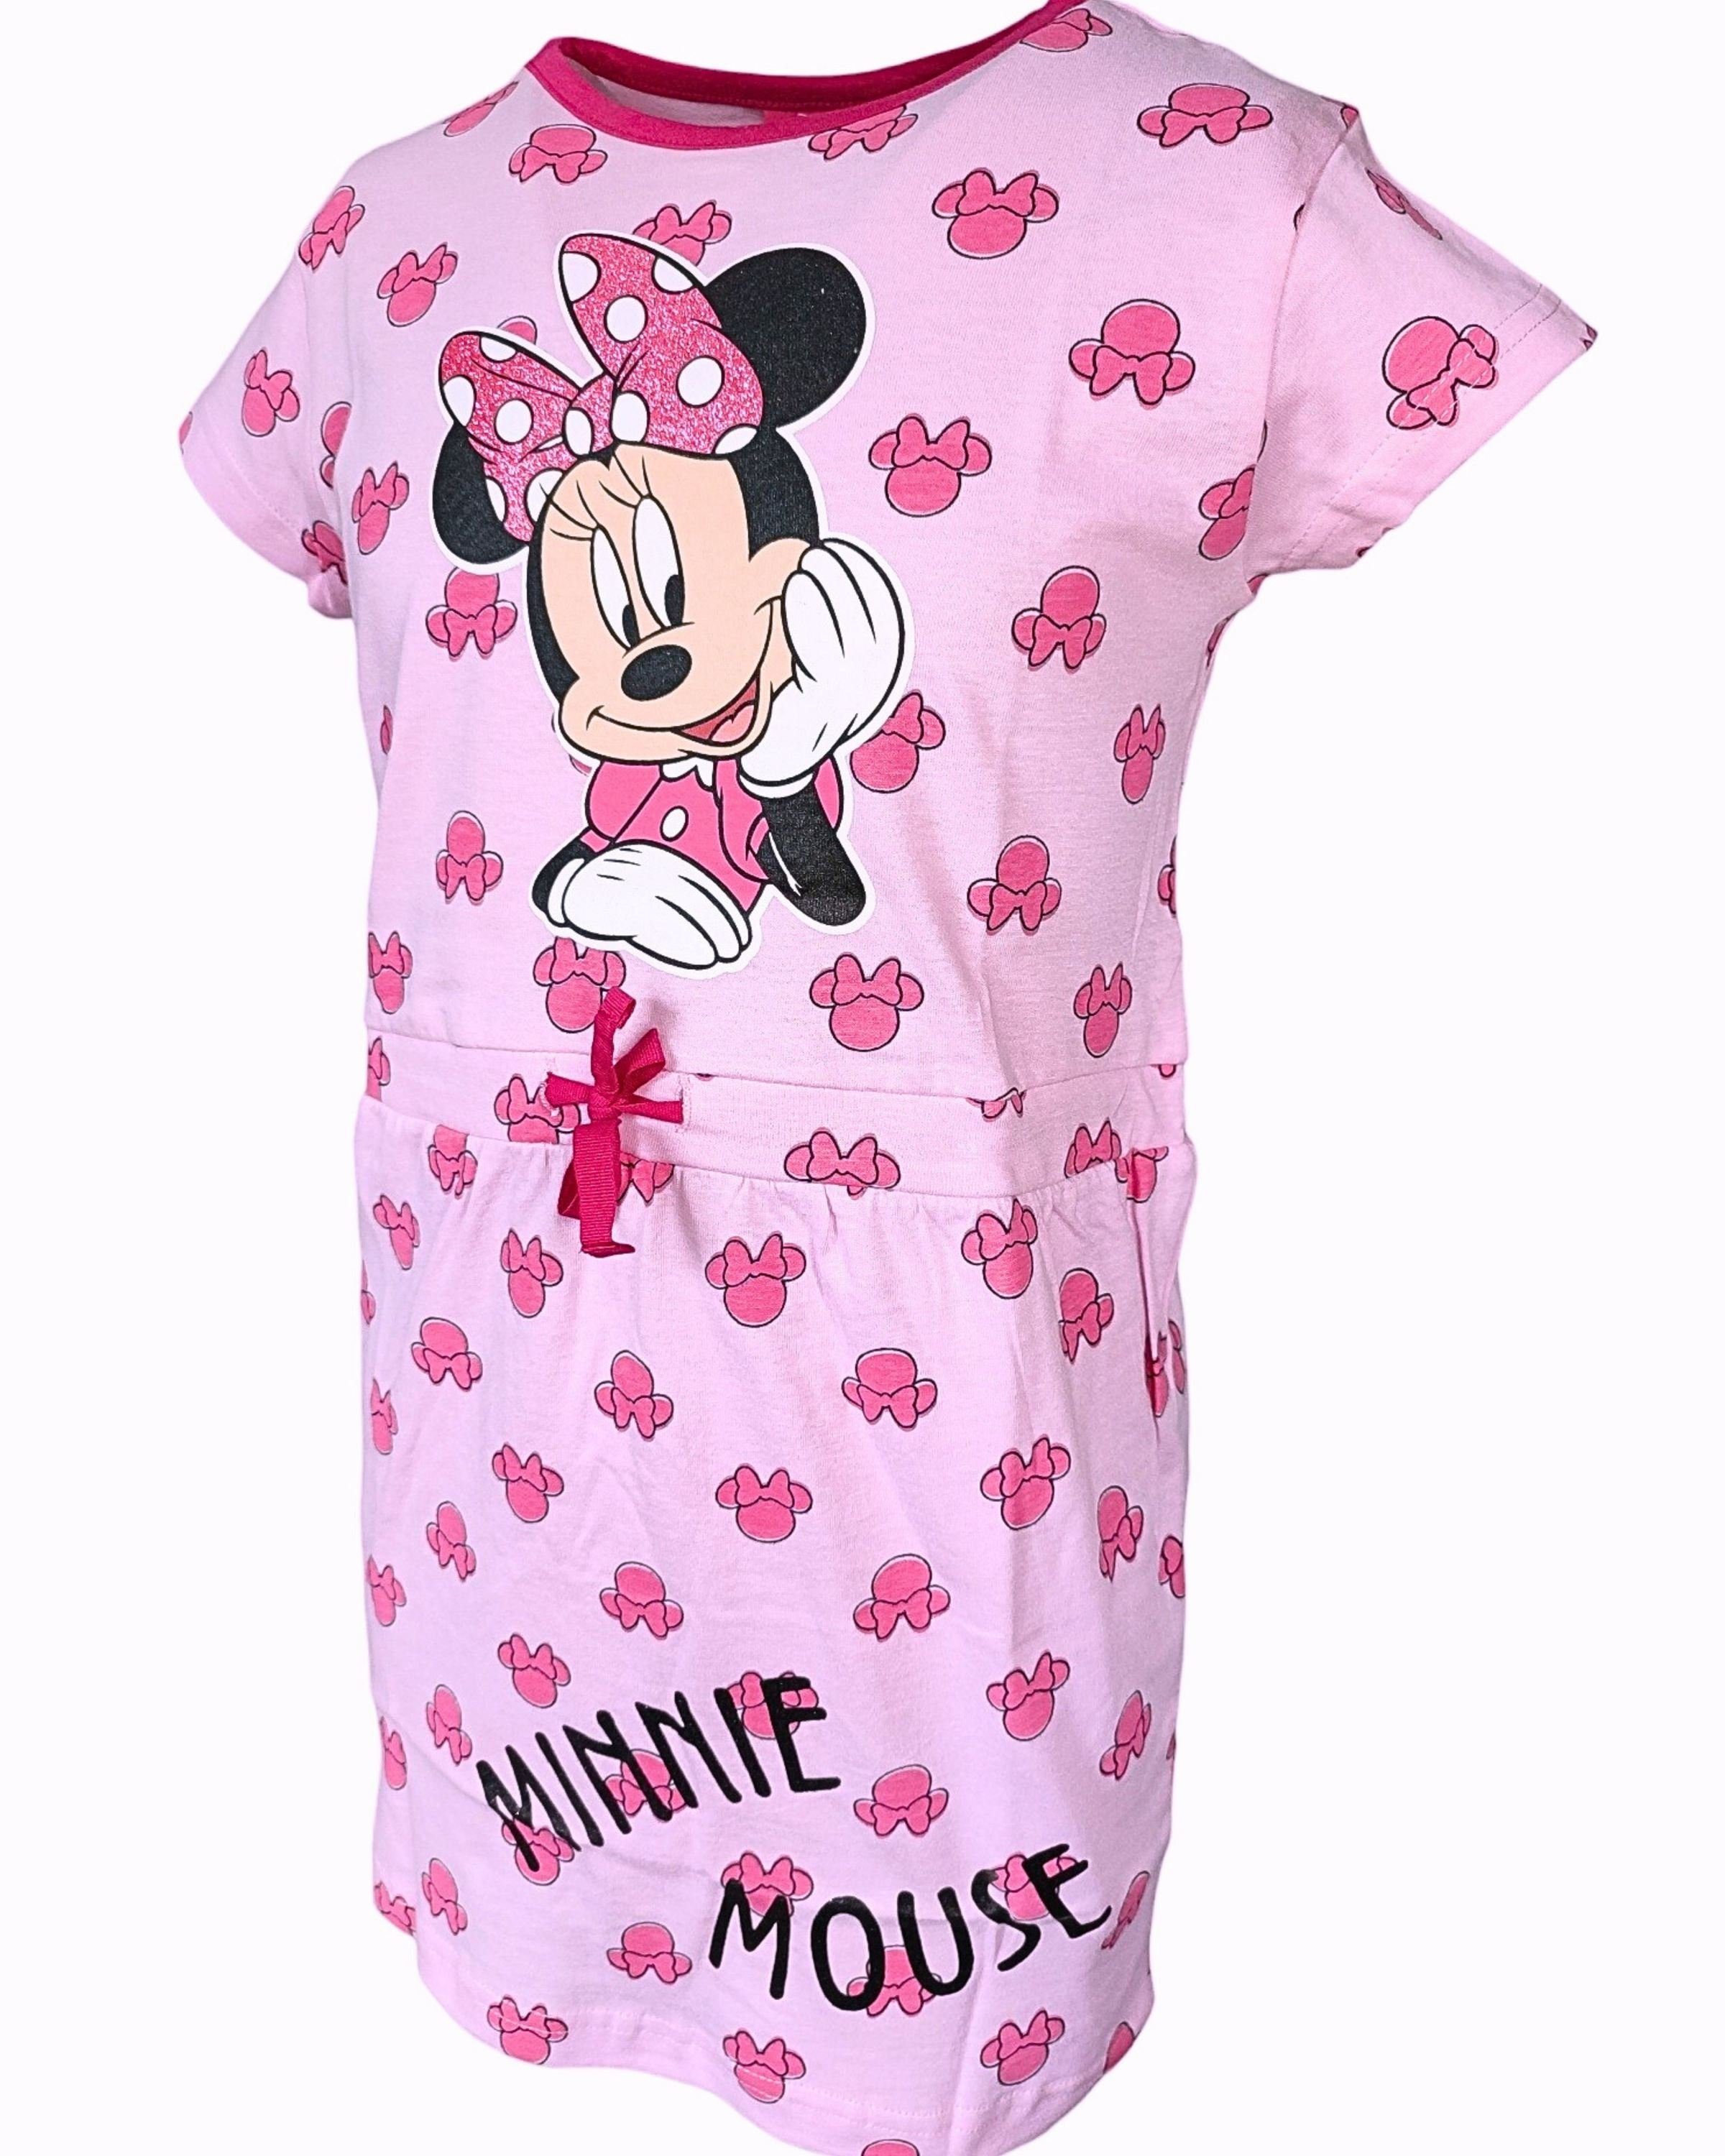 Nach fast 100 Jahren Kleid trägt Minnie Maus jetzt einen Hosenazug